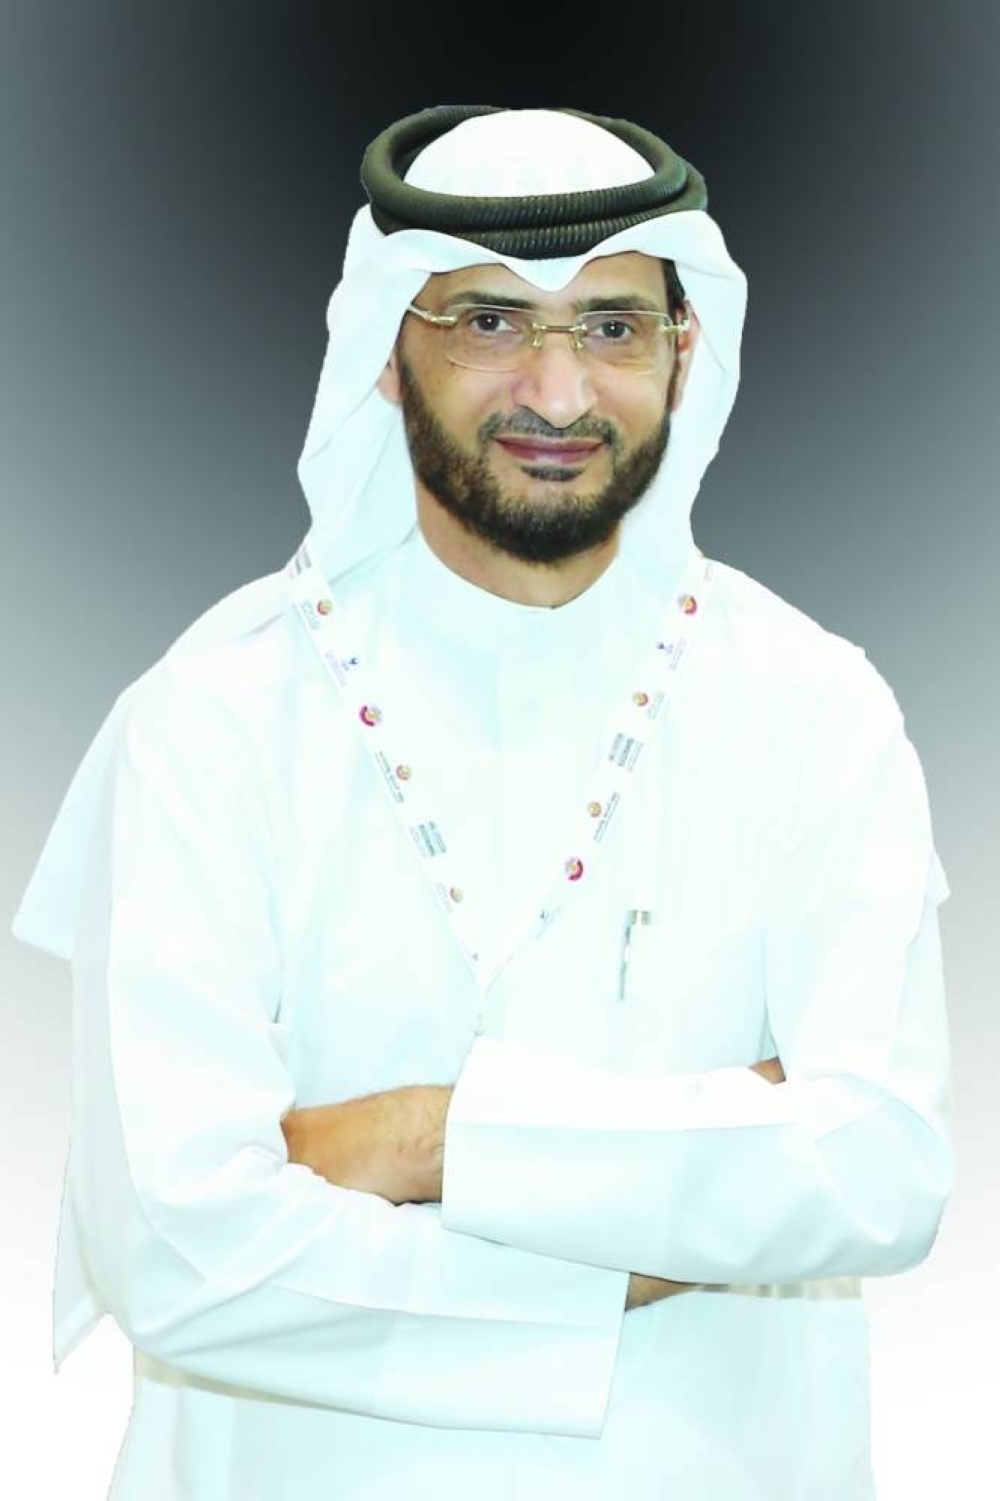 Dr Mahmoud al-Mahmoud